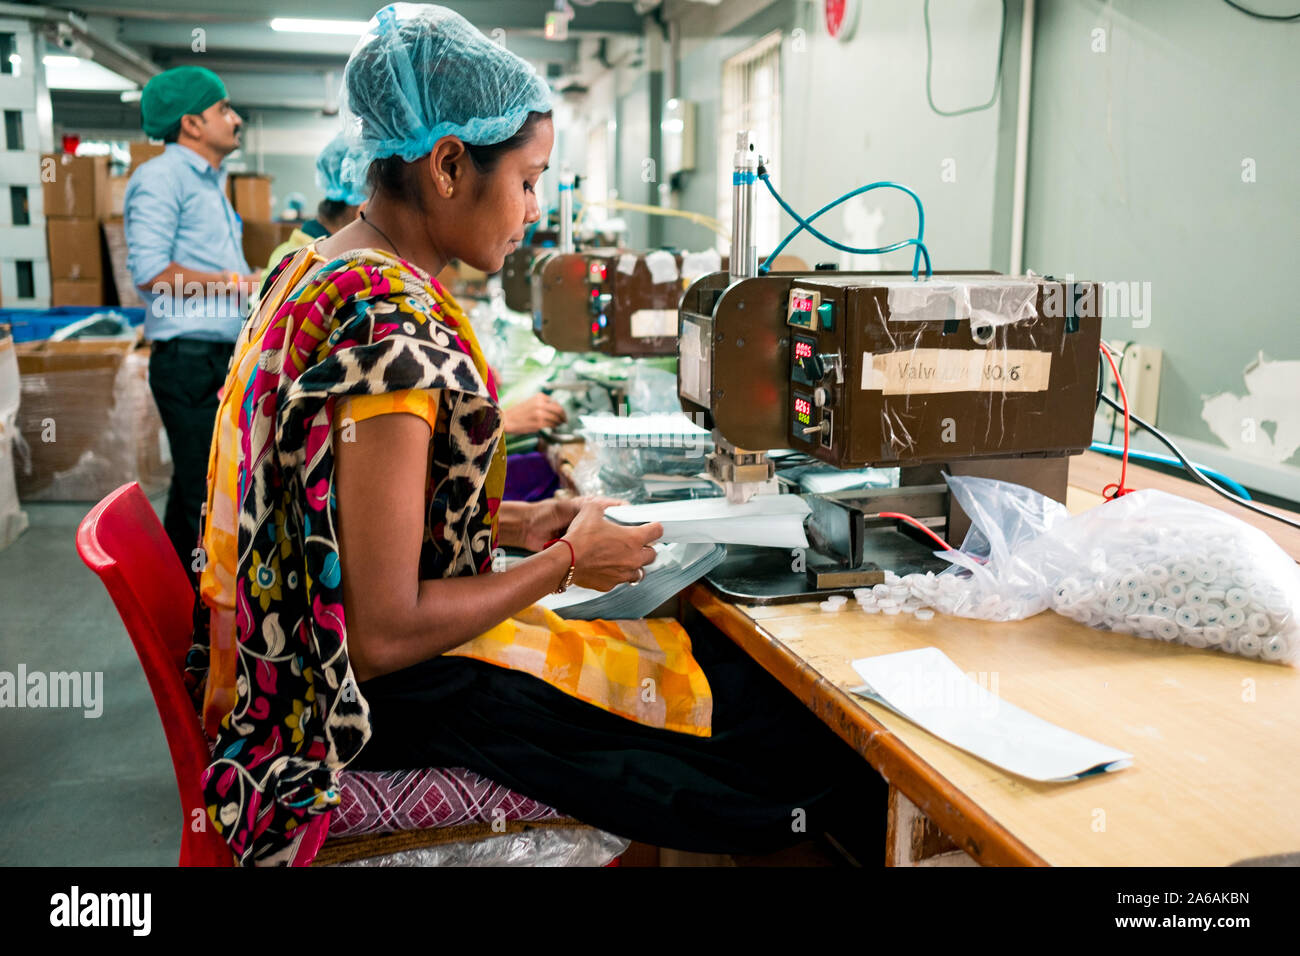 New Delhi, Inde - 10 septembre 2019 : une femme indienne au travail à l'aide de l'équipement industriel à l'intérieur de l'usine de fabrication d'emballage avec l'expression sereine Banque D'Images